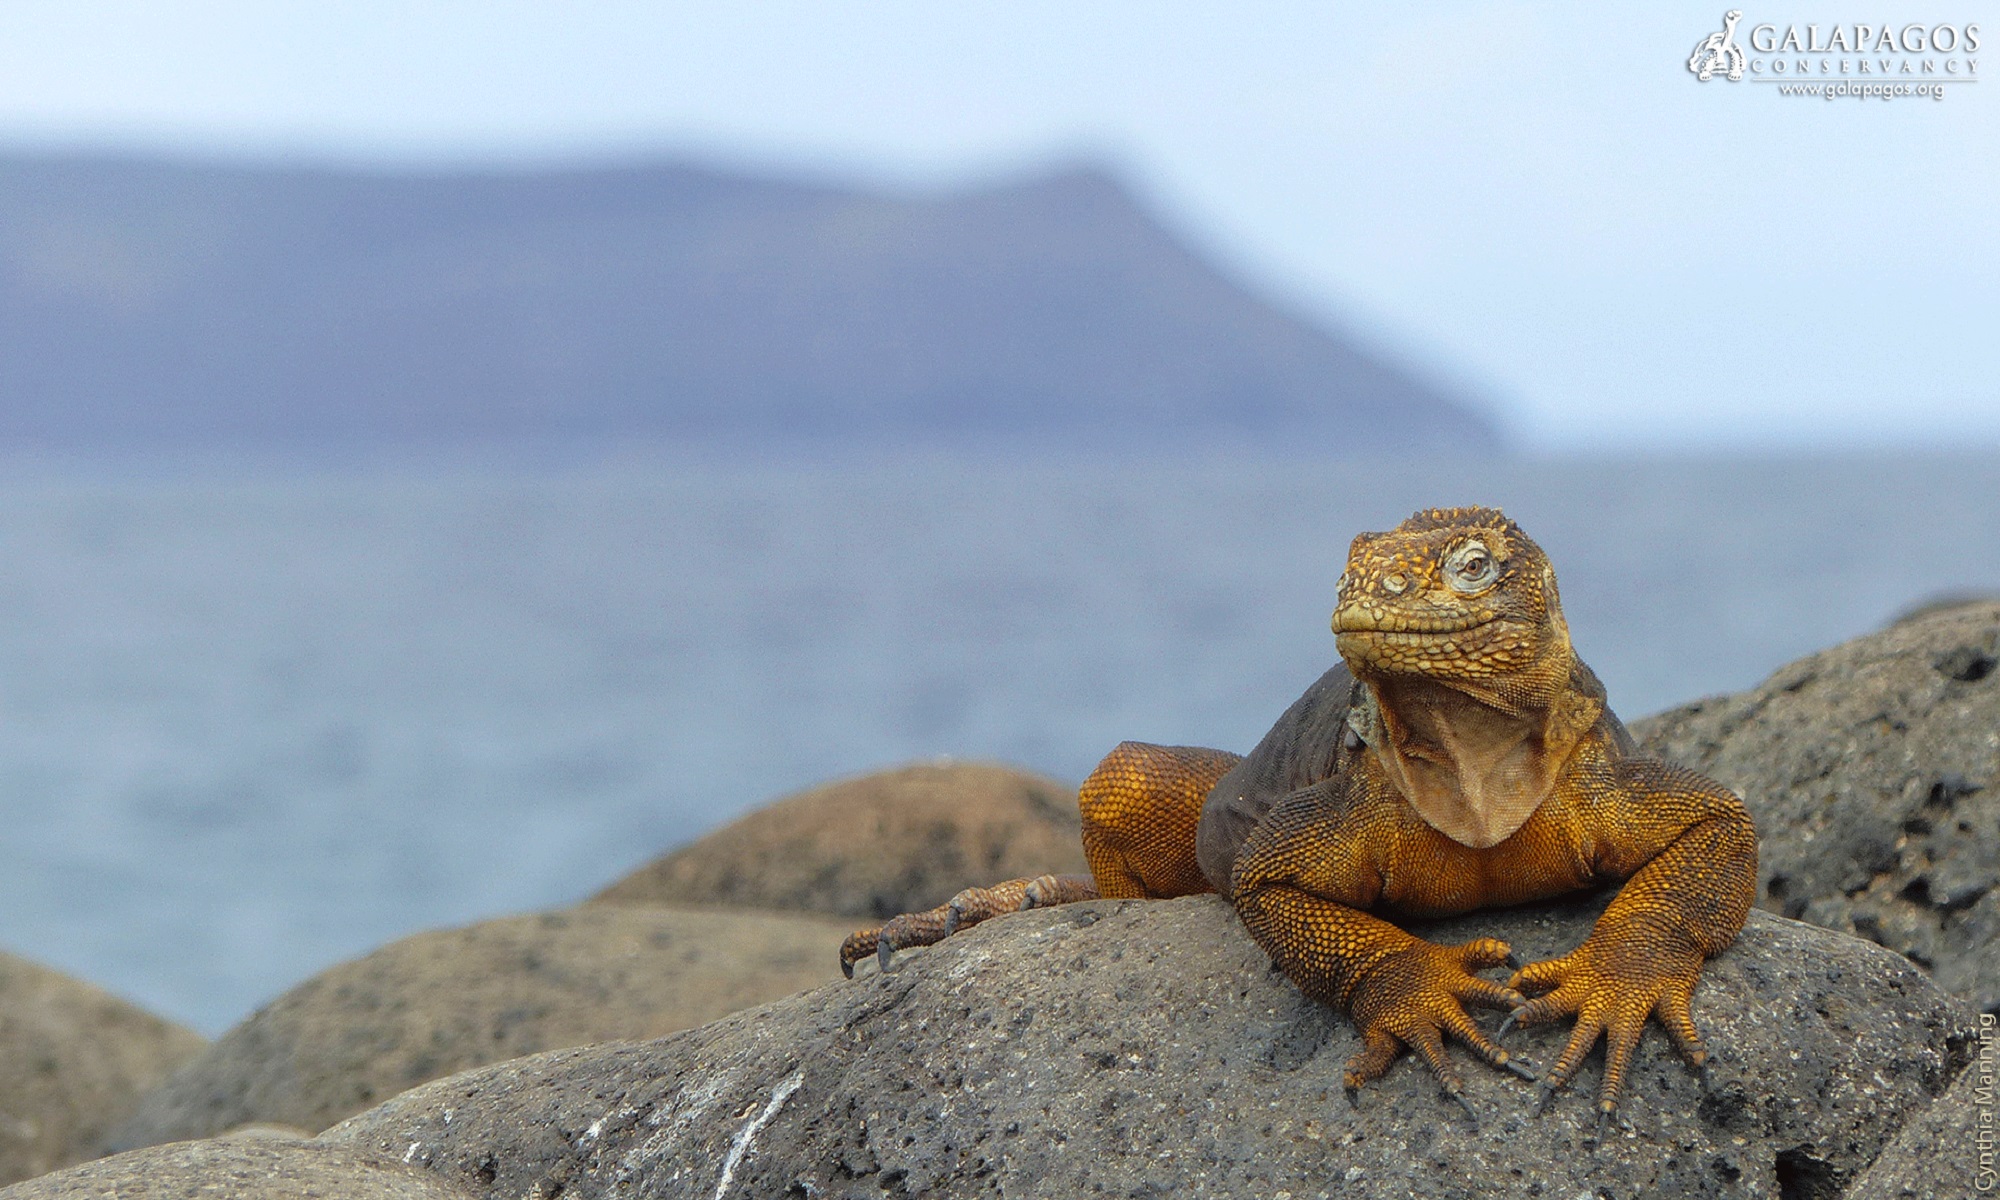 Exclusif - Séjour-évasion autour des îles Galápagos - 9J - Équateur 2021 - Iguane terrestre